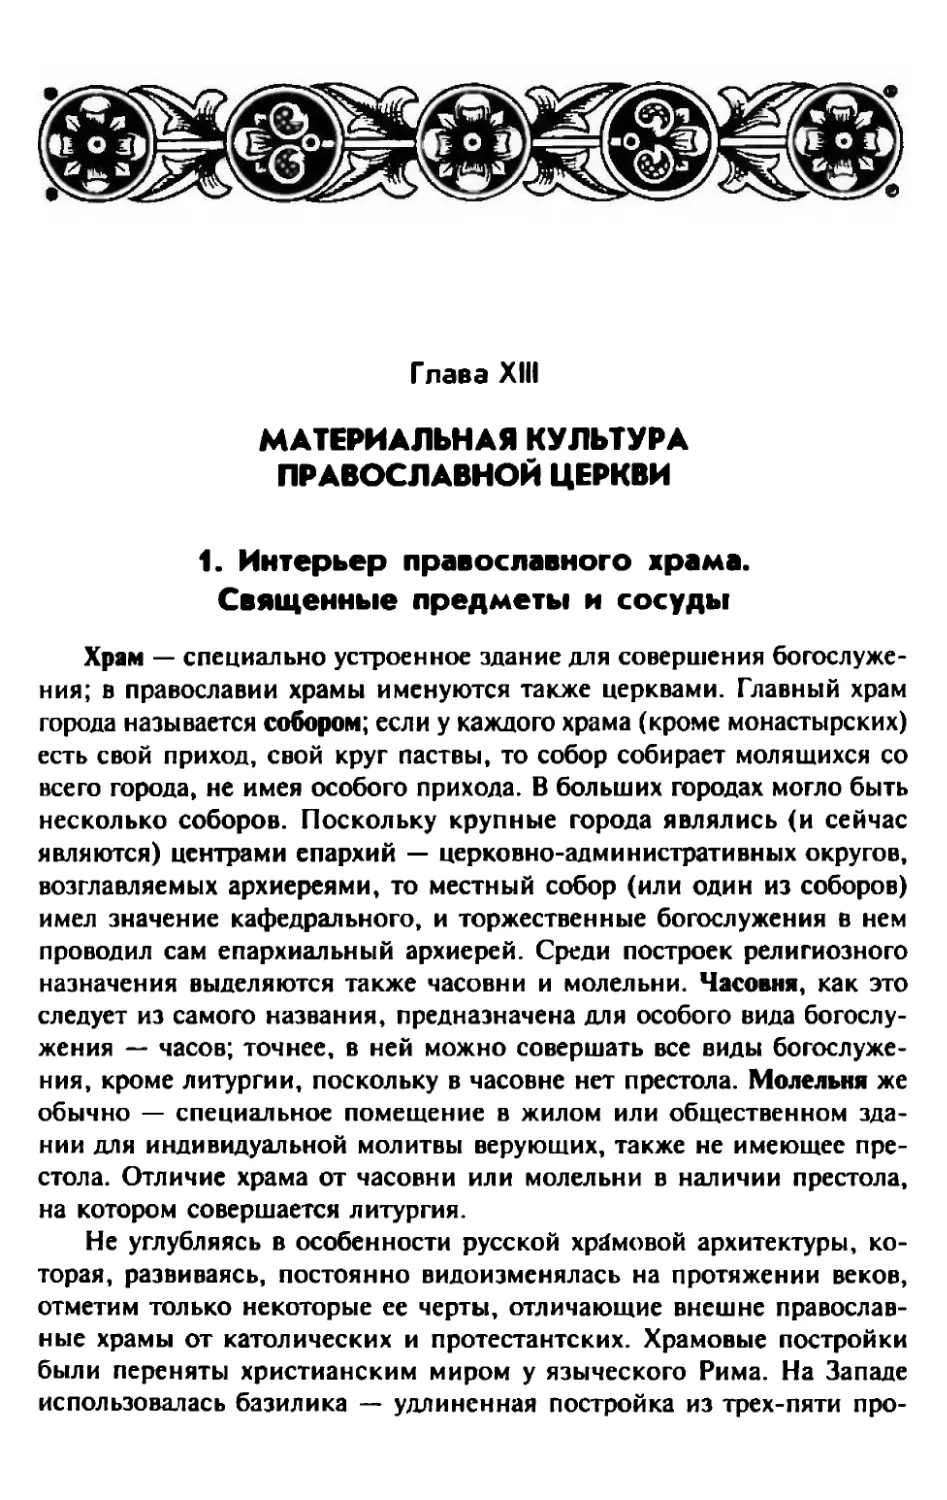 Глава XIII. Материальная культура православной церкви